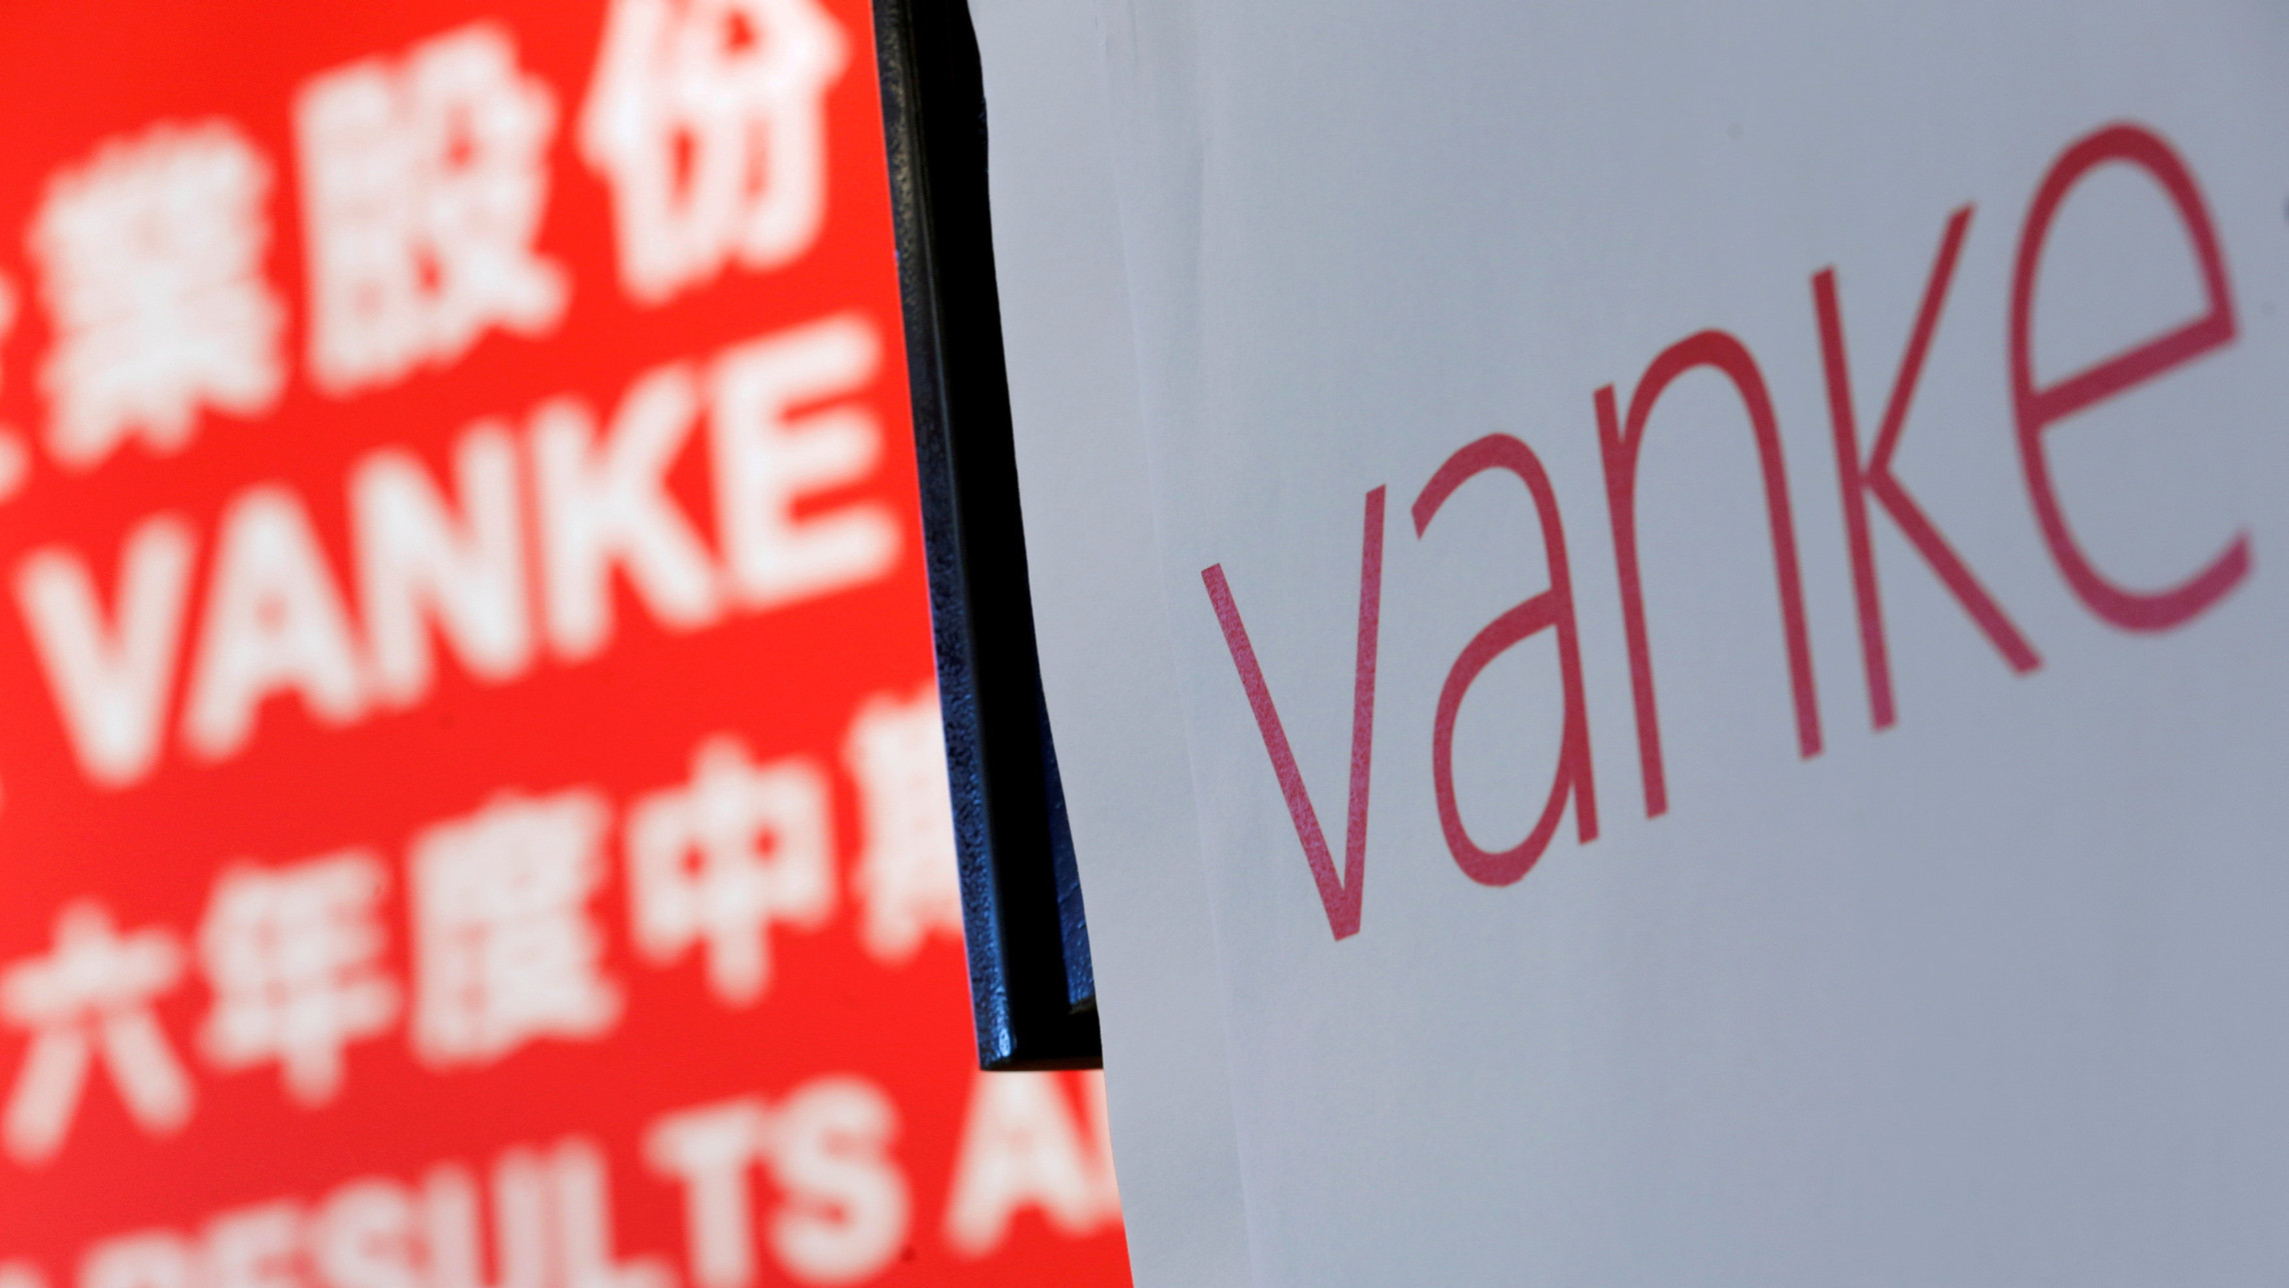 DBS: China Vanke – Buy Target Price HK$16.80; Rmb18.42